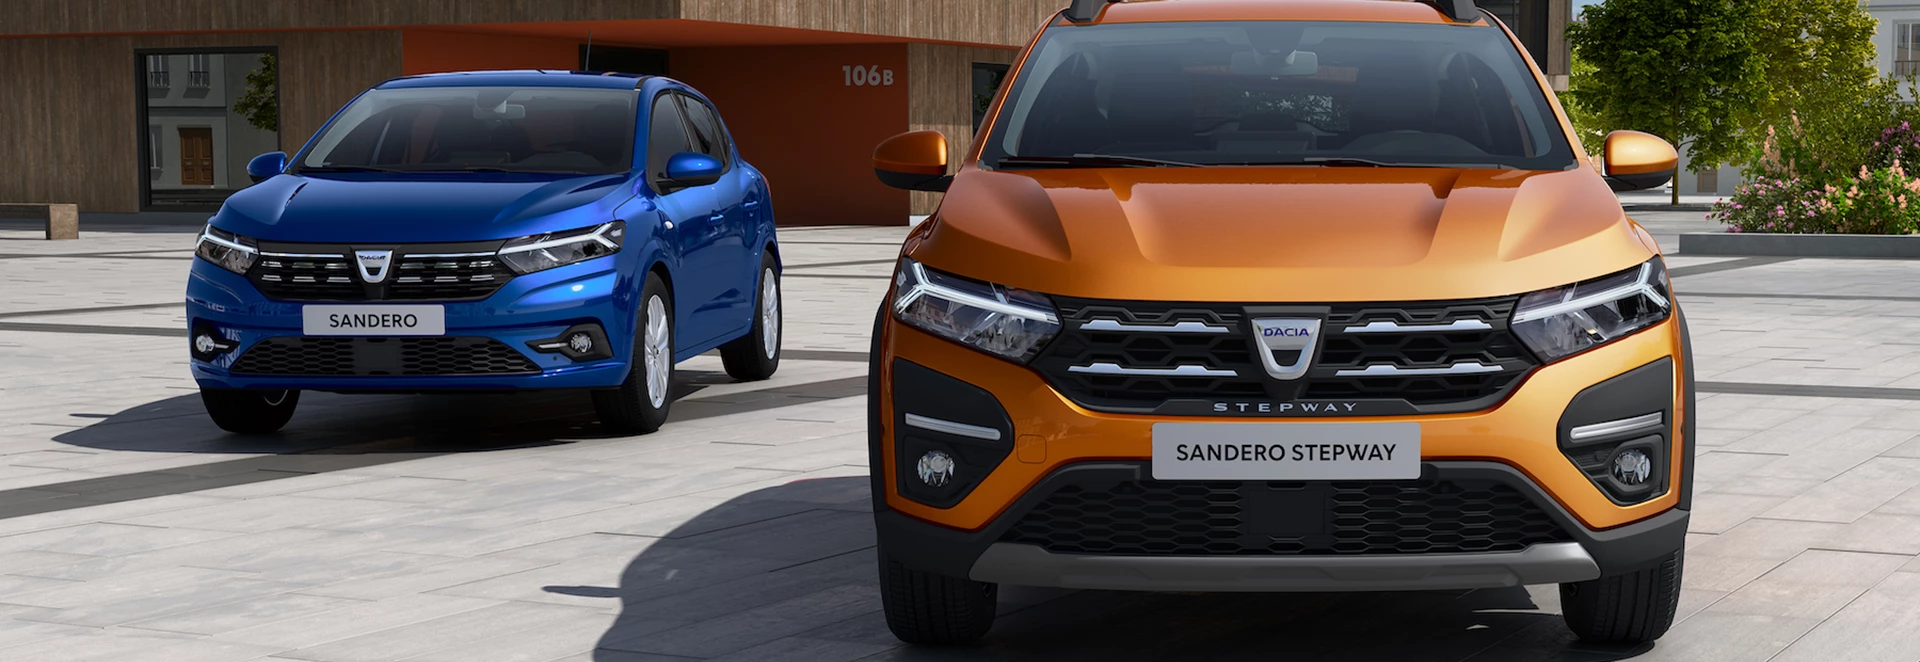 Dacia gives first look at new Sandero 